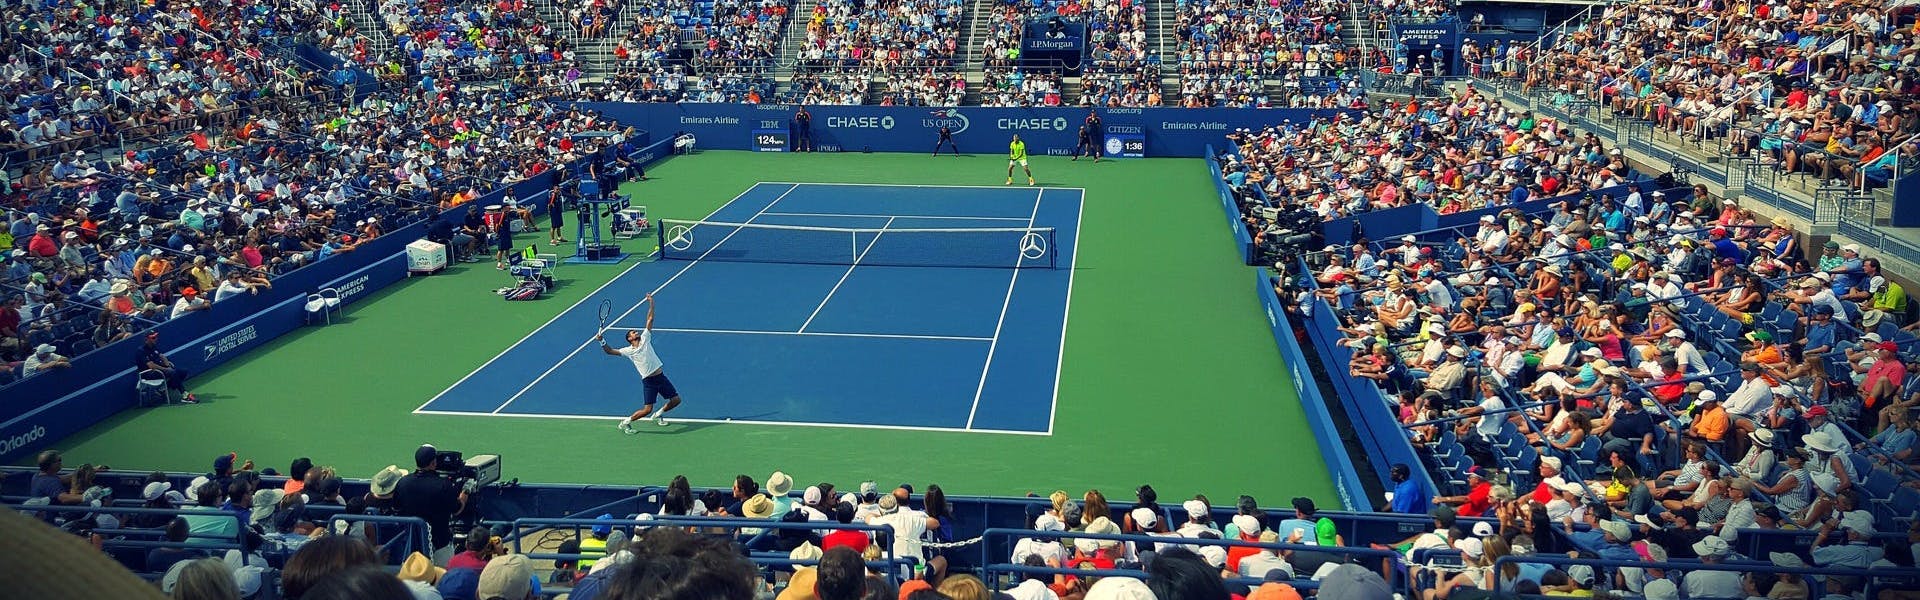 Man making a serve in a tennis match